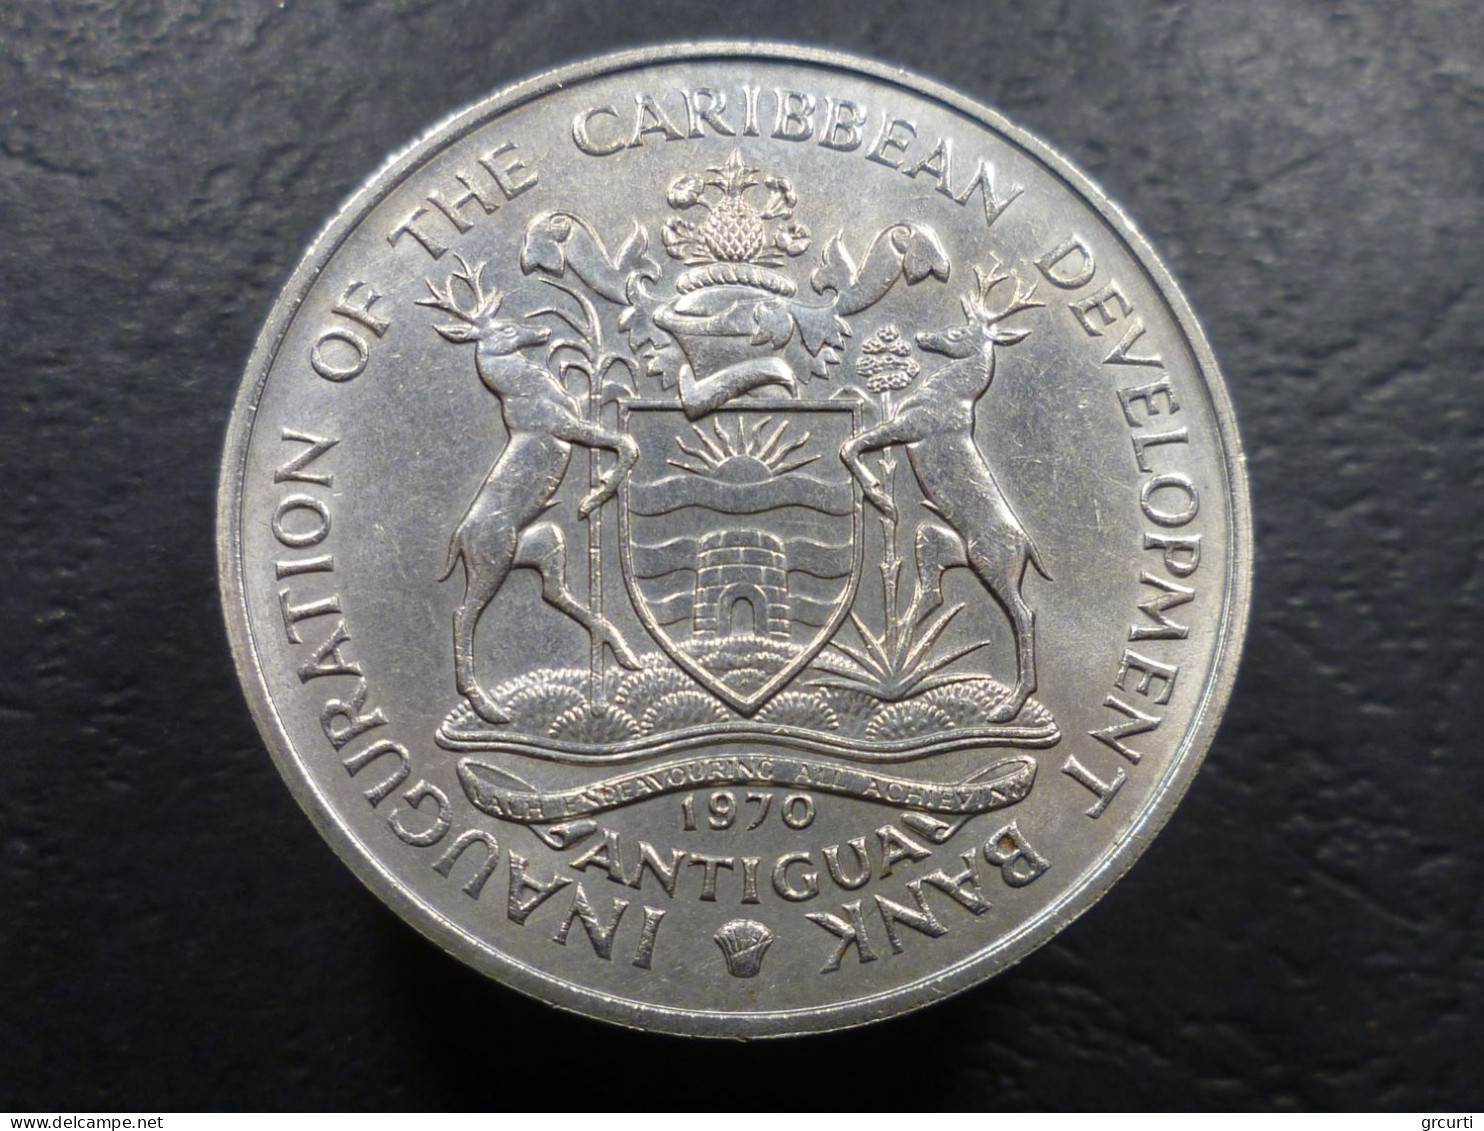 Antigua - 4 Dollars 1970 - Inaugurazione Banca Caraibica Per Lo Sviluppo - F.A.O. - KM# 1 - Antigua Et Barbuda